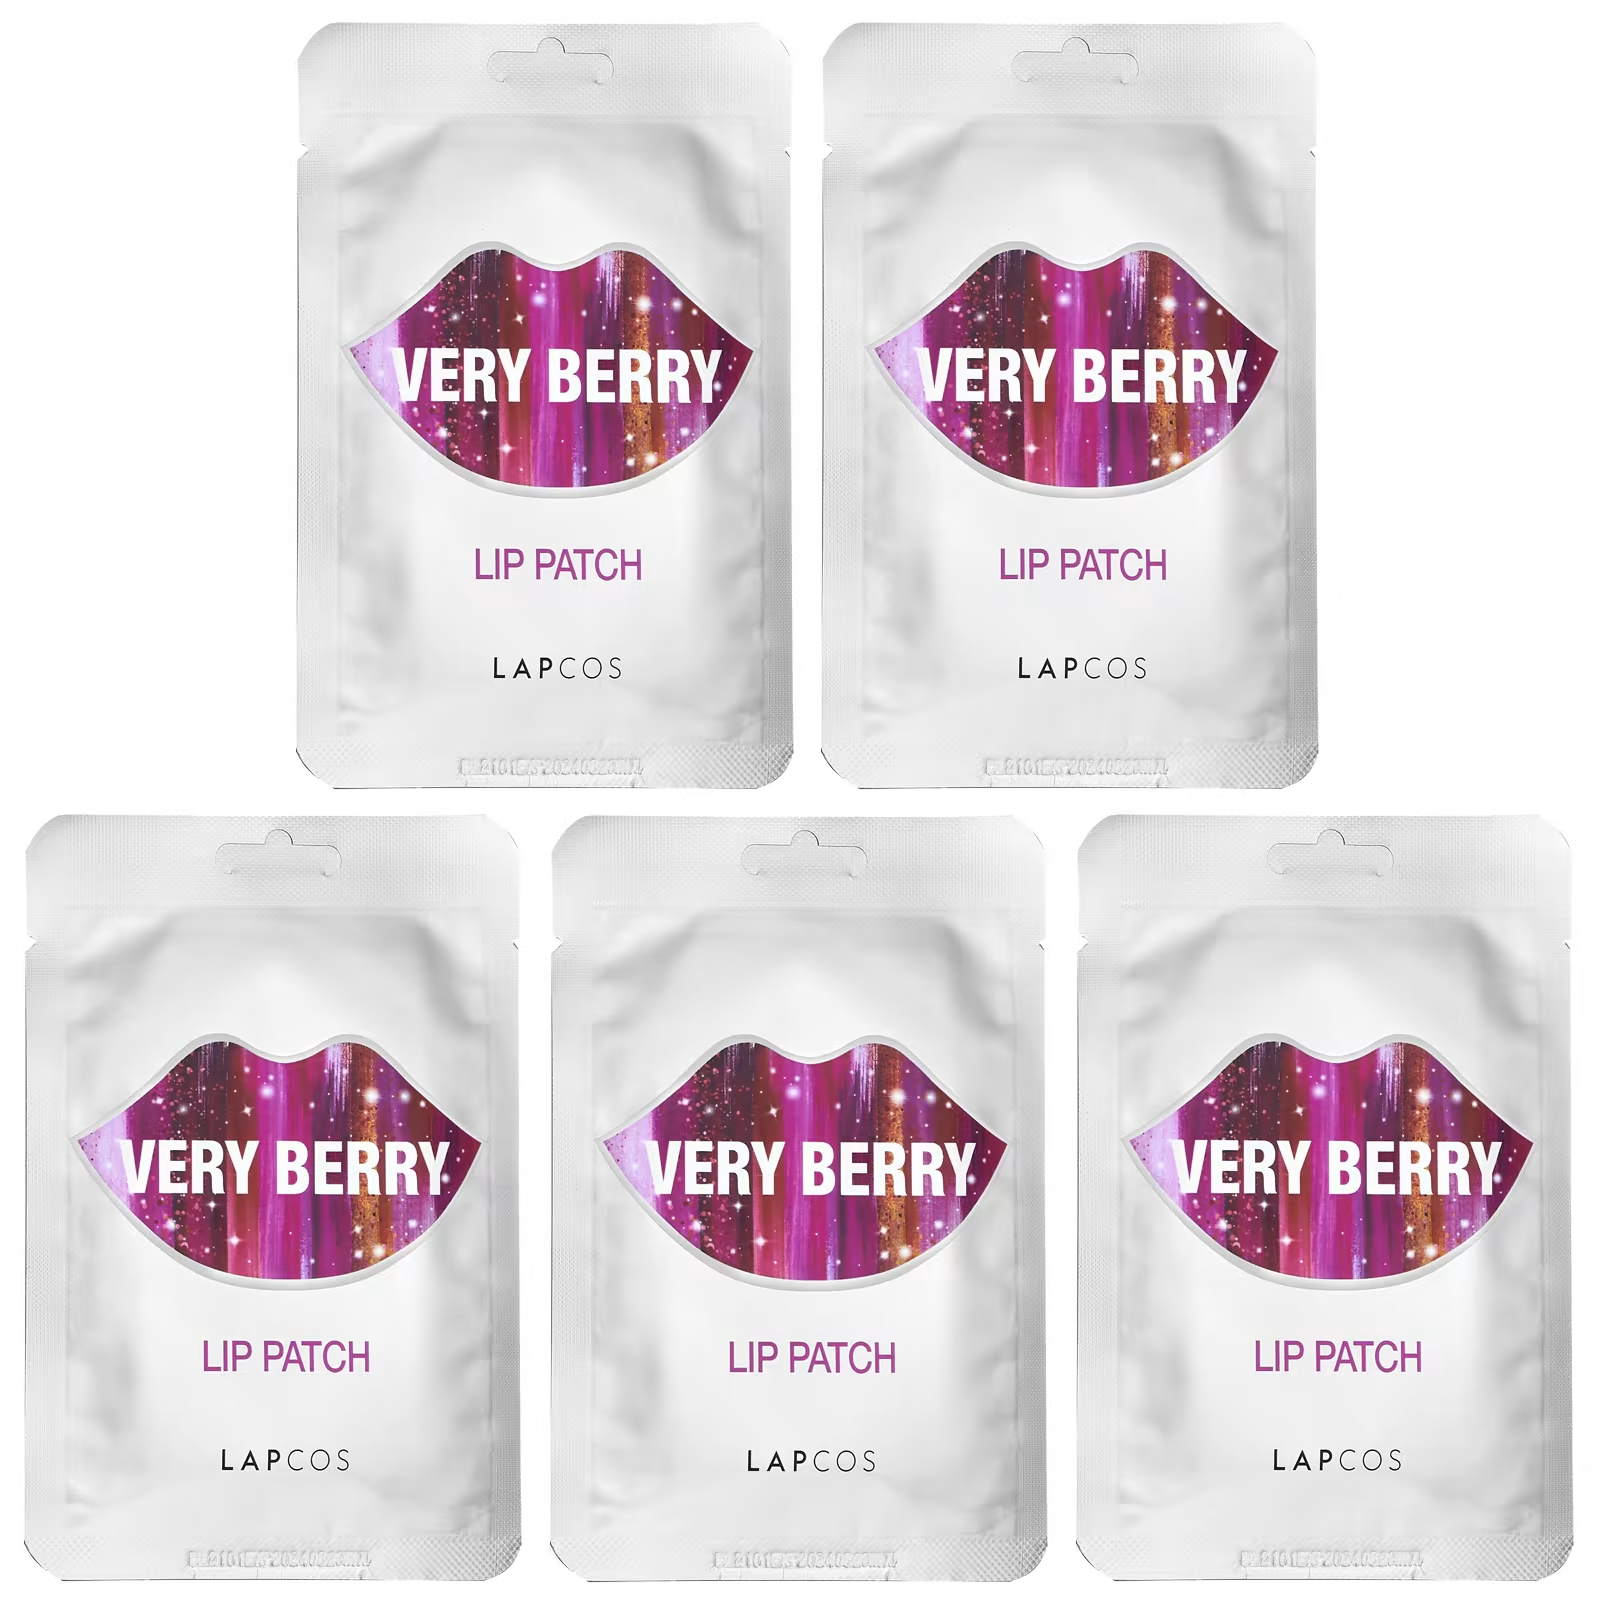 Lapcos Lip Patch Very Berry 5 патчей по 0,1 унции каждый